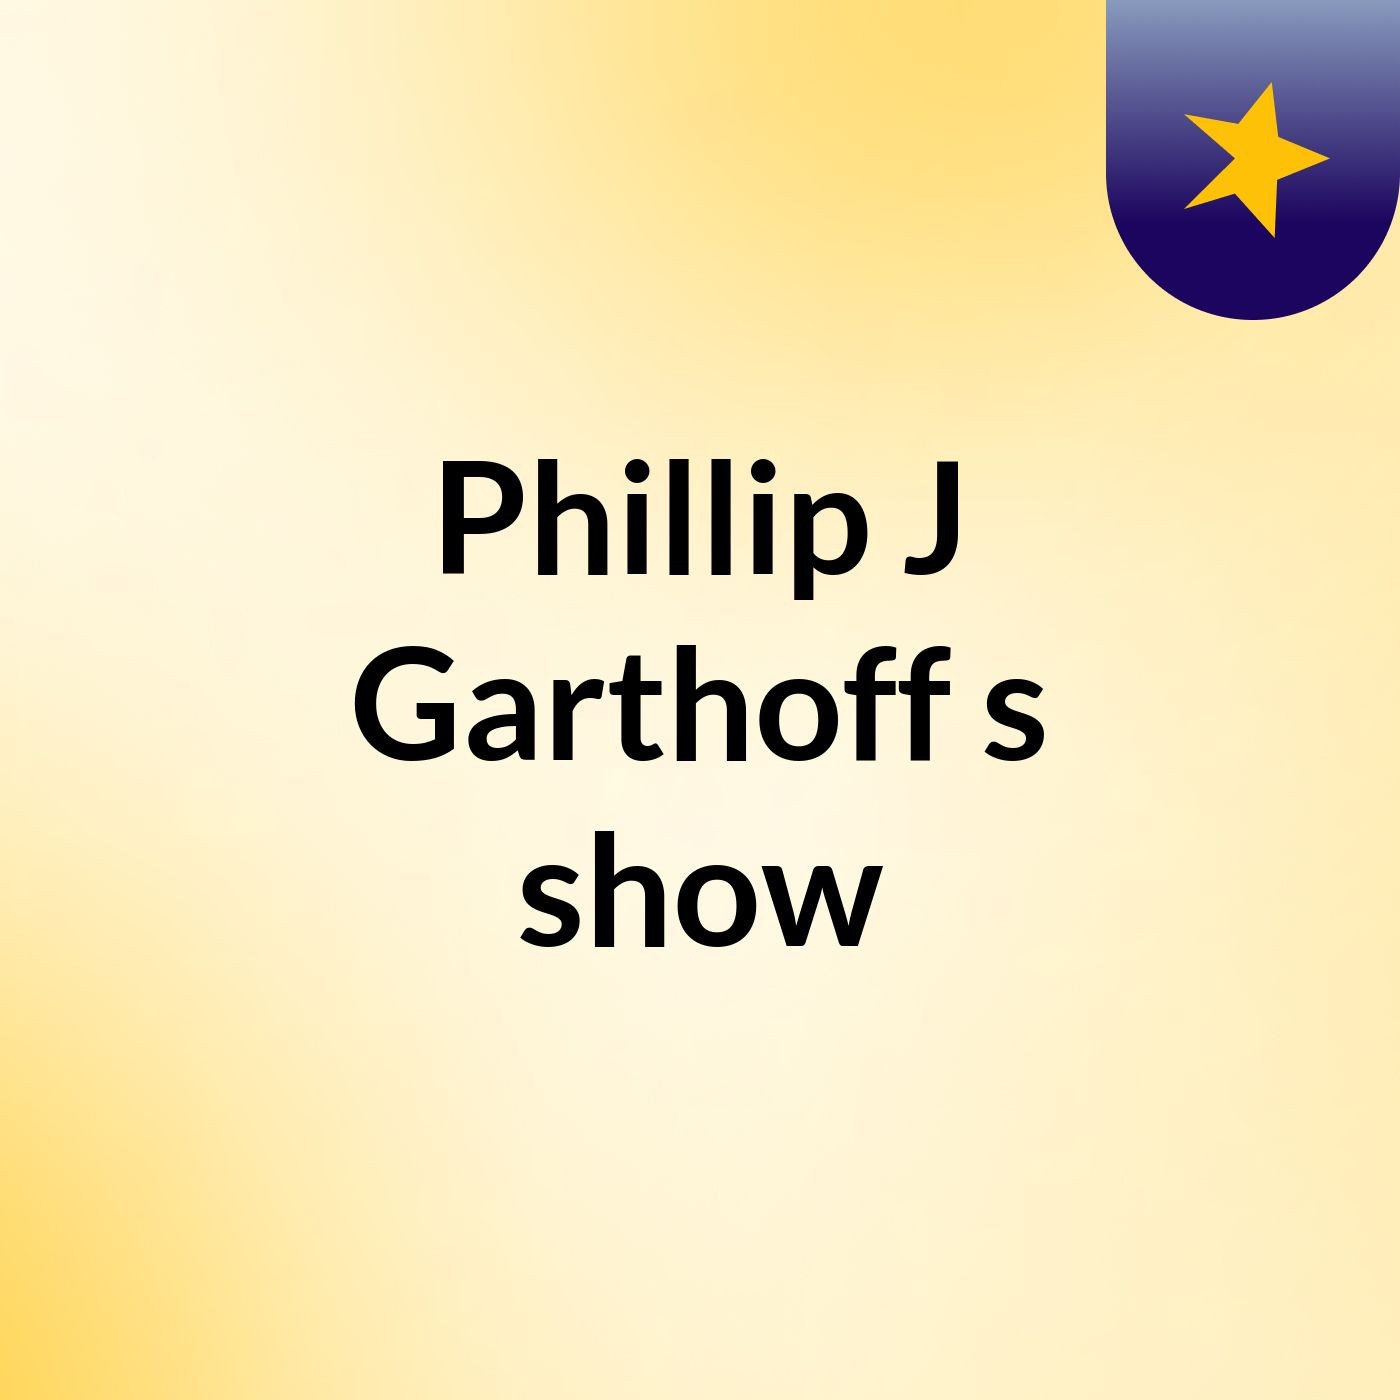 Episode 8 - Phillip J Garthoff's show